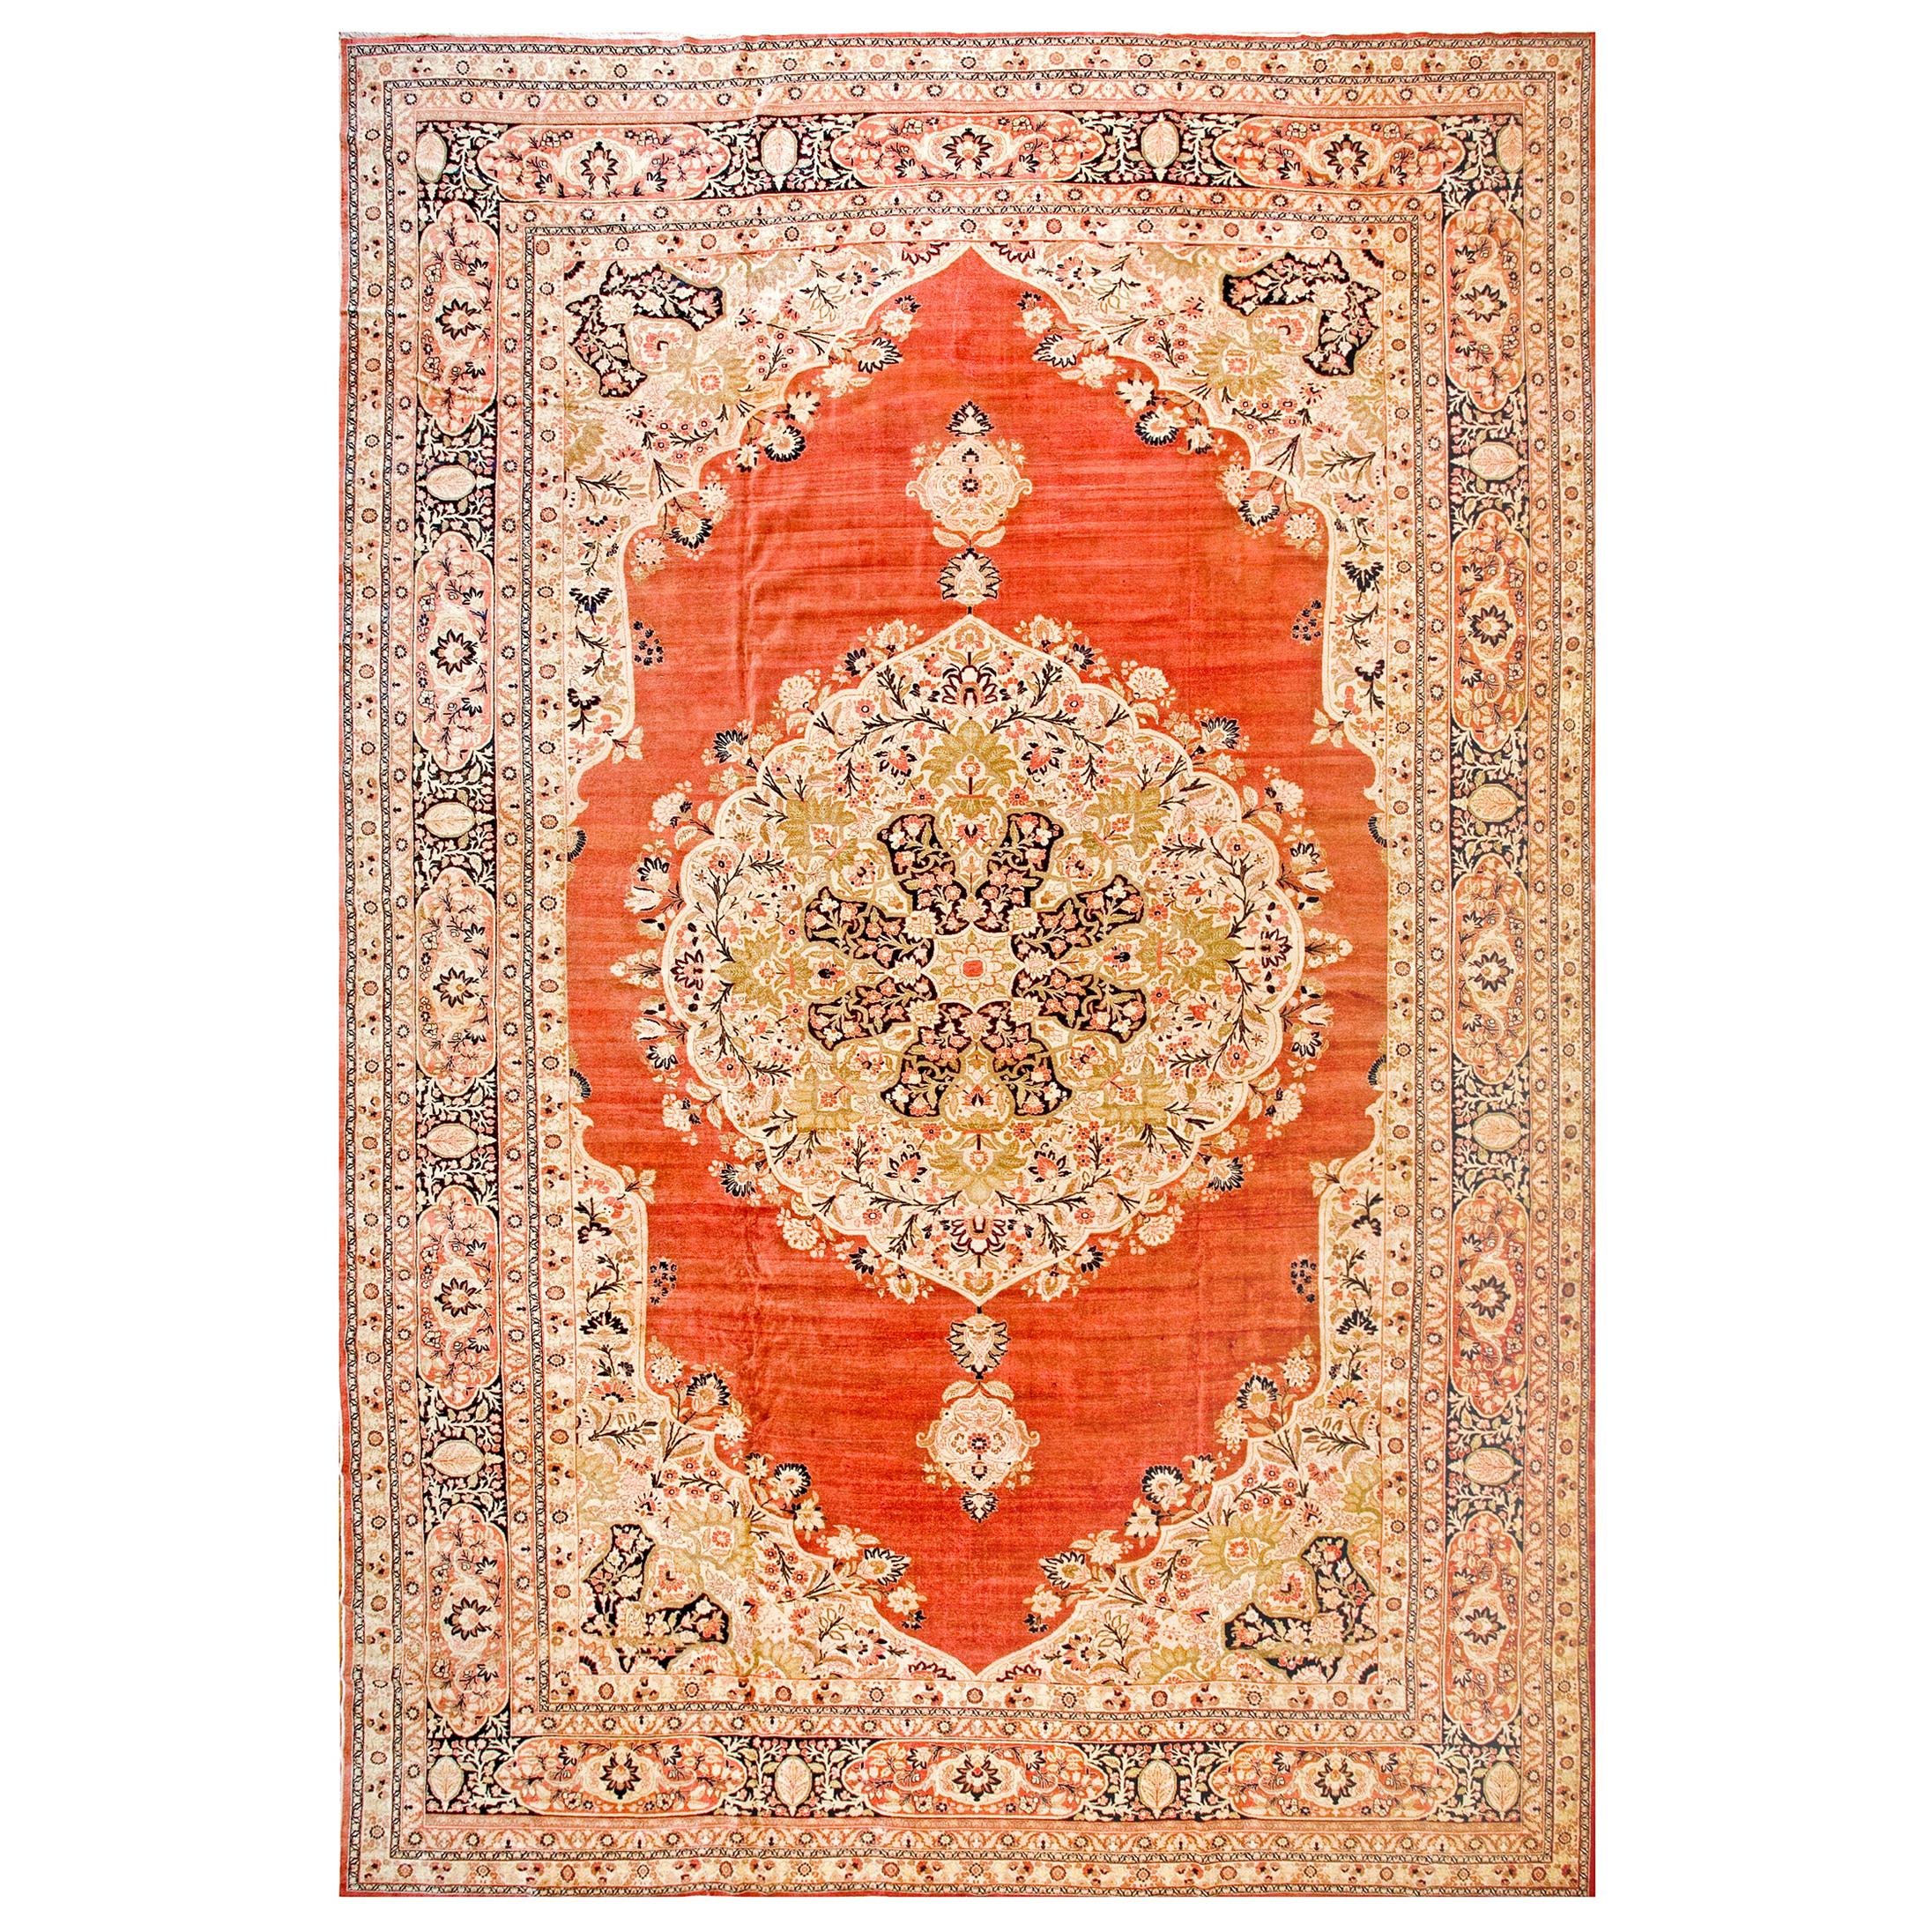 19th Century Persian Haji Jalili Tabriz Carpet ( 13'7" x 20'2" - 414 x 615 )